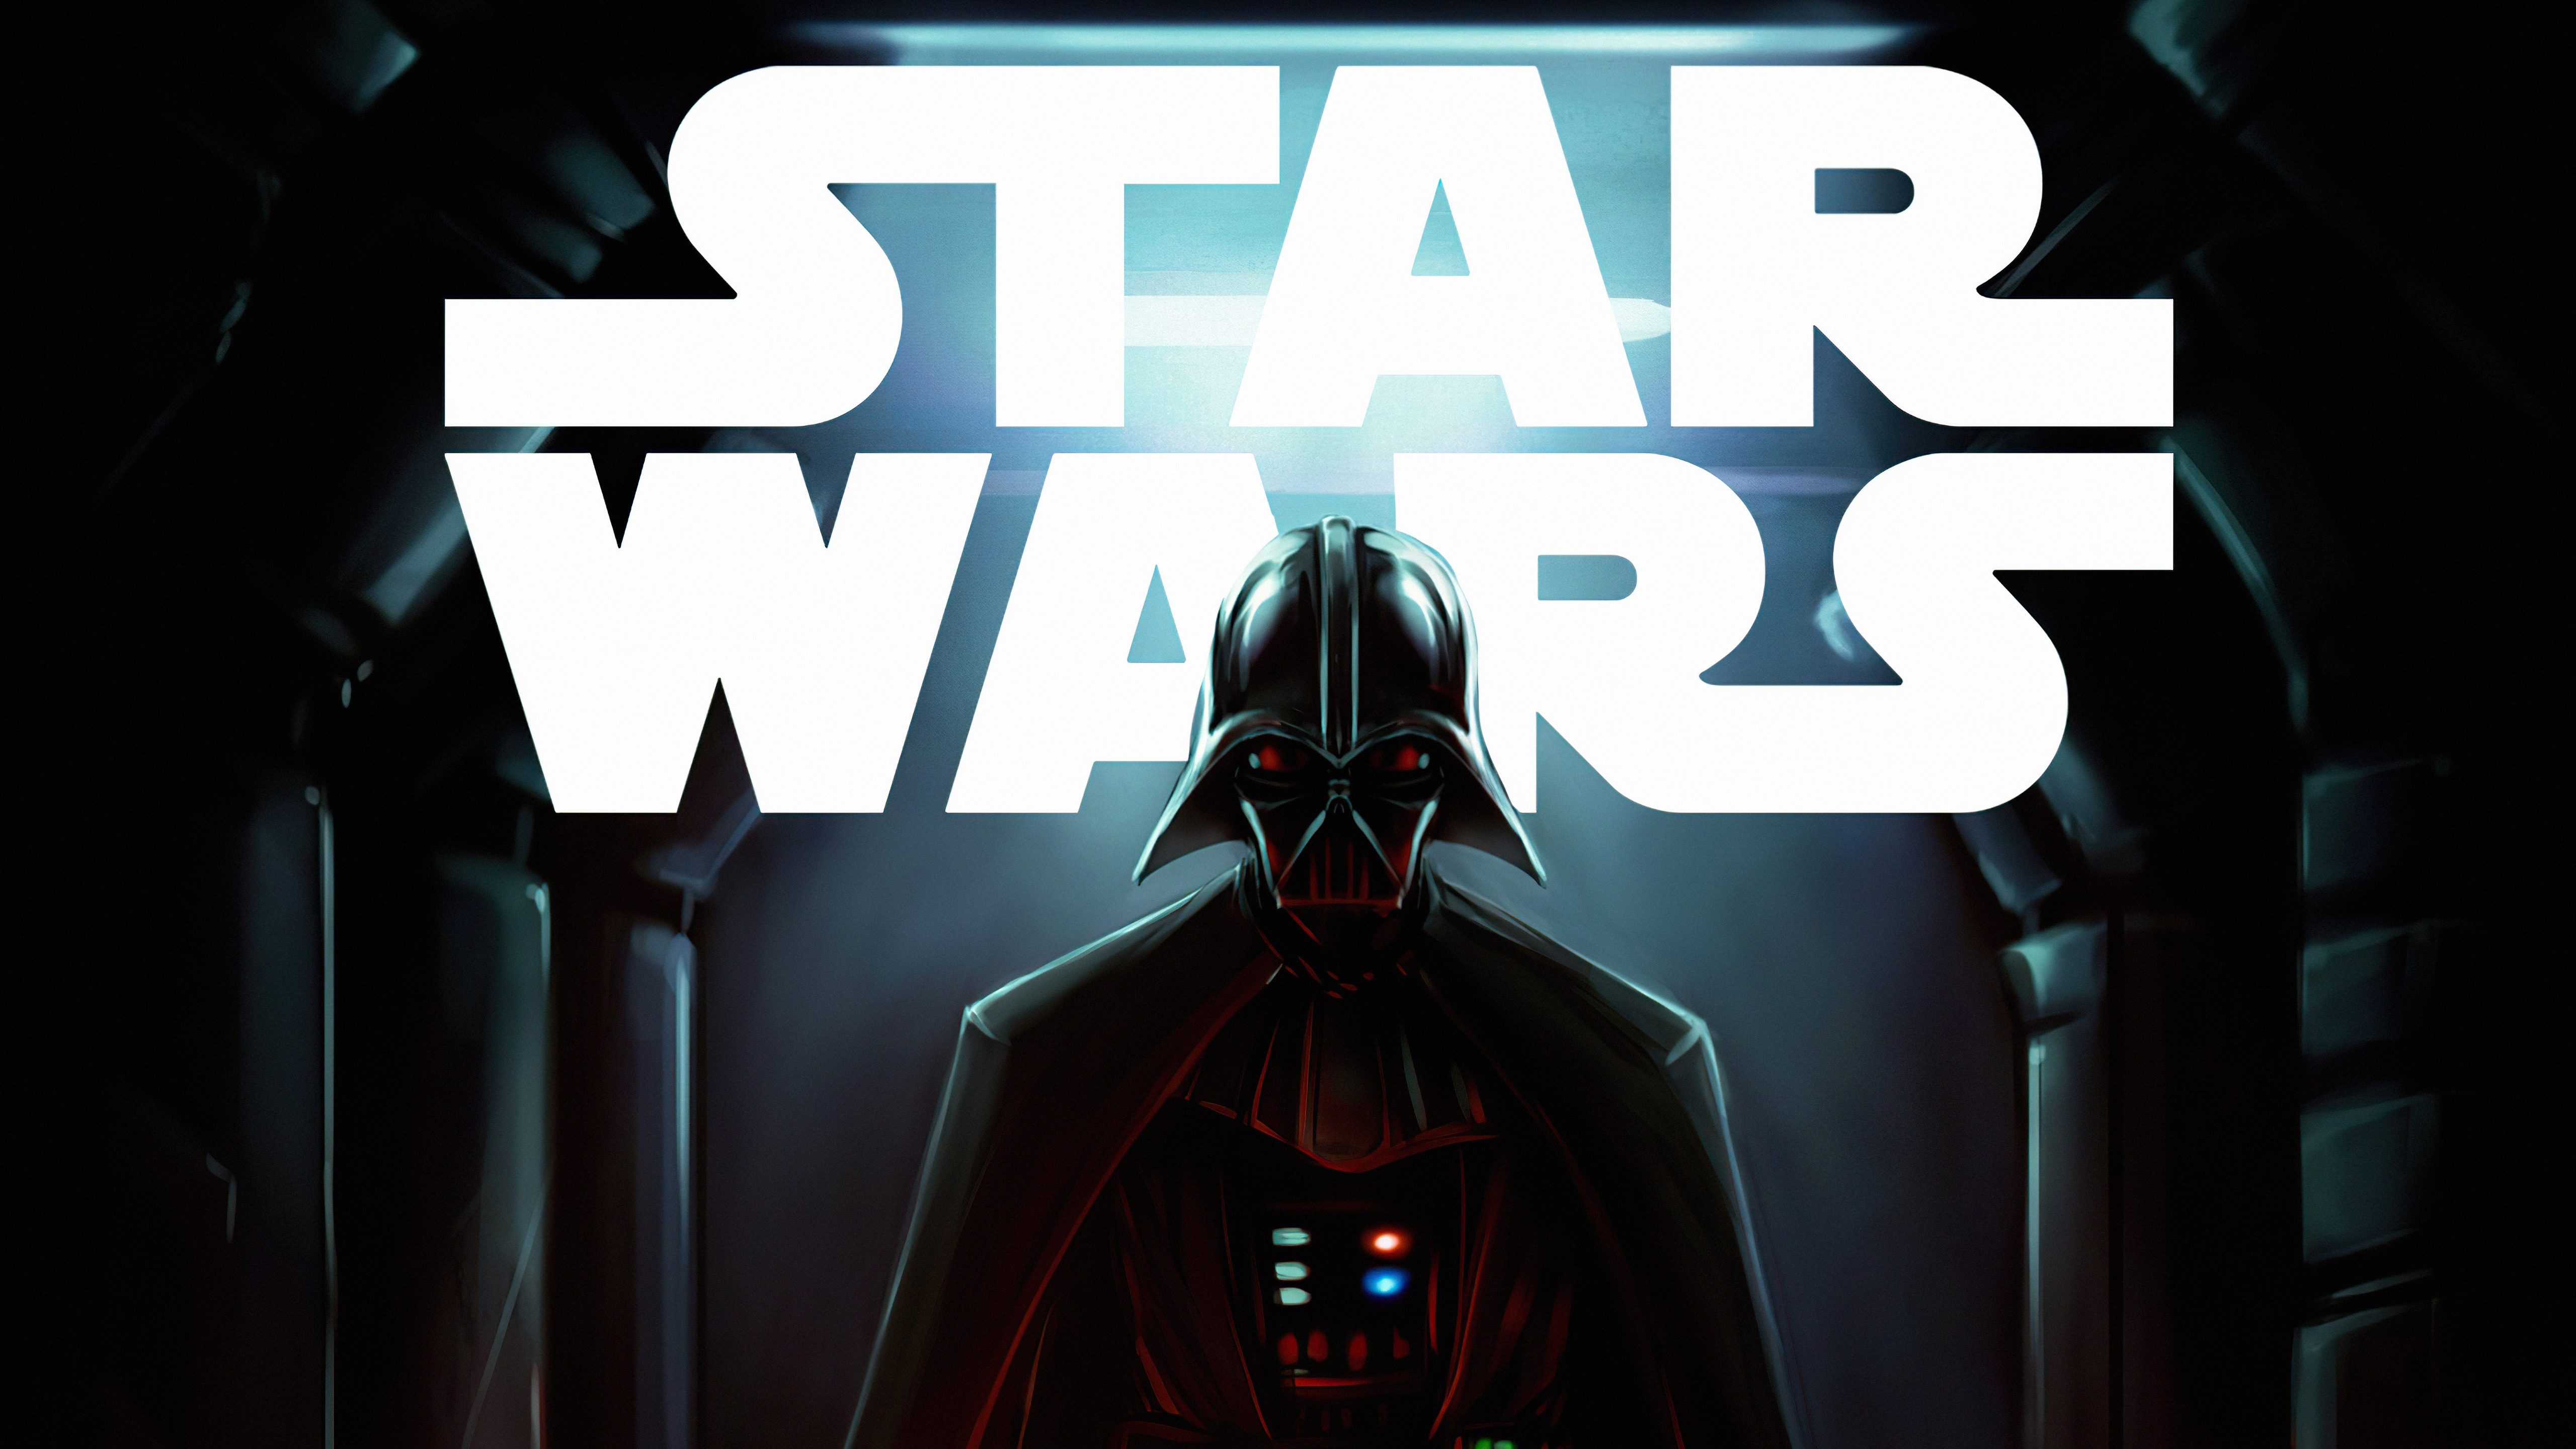 Darth Vader Sith Star Wars Wallpapers